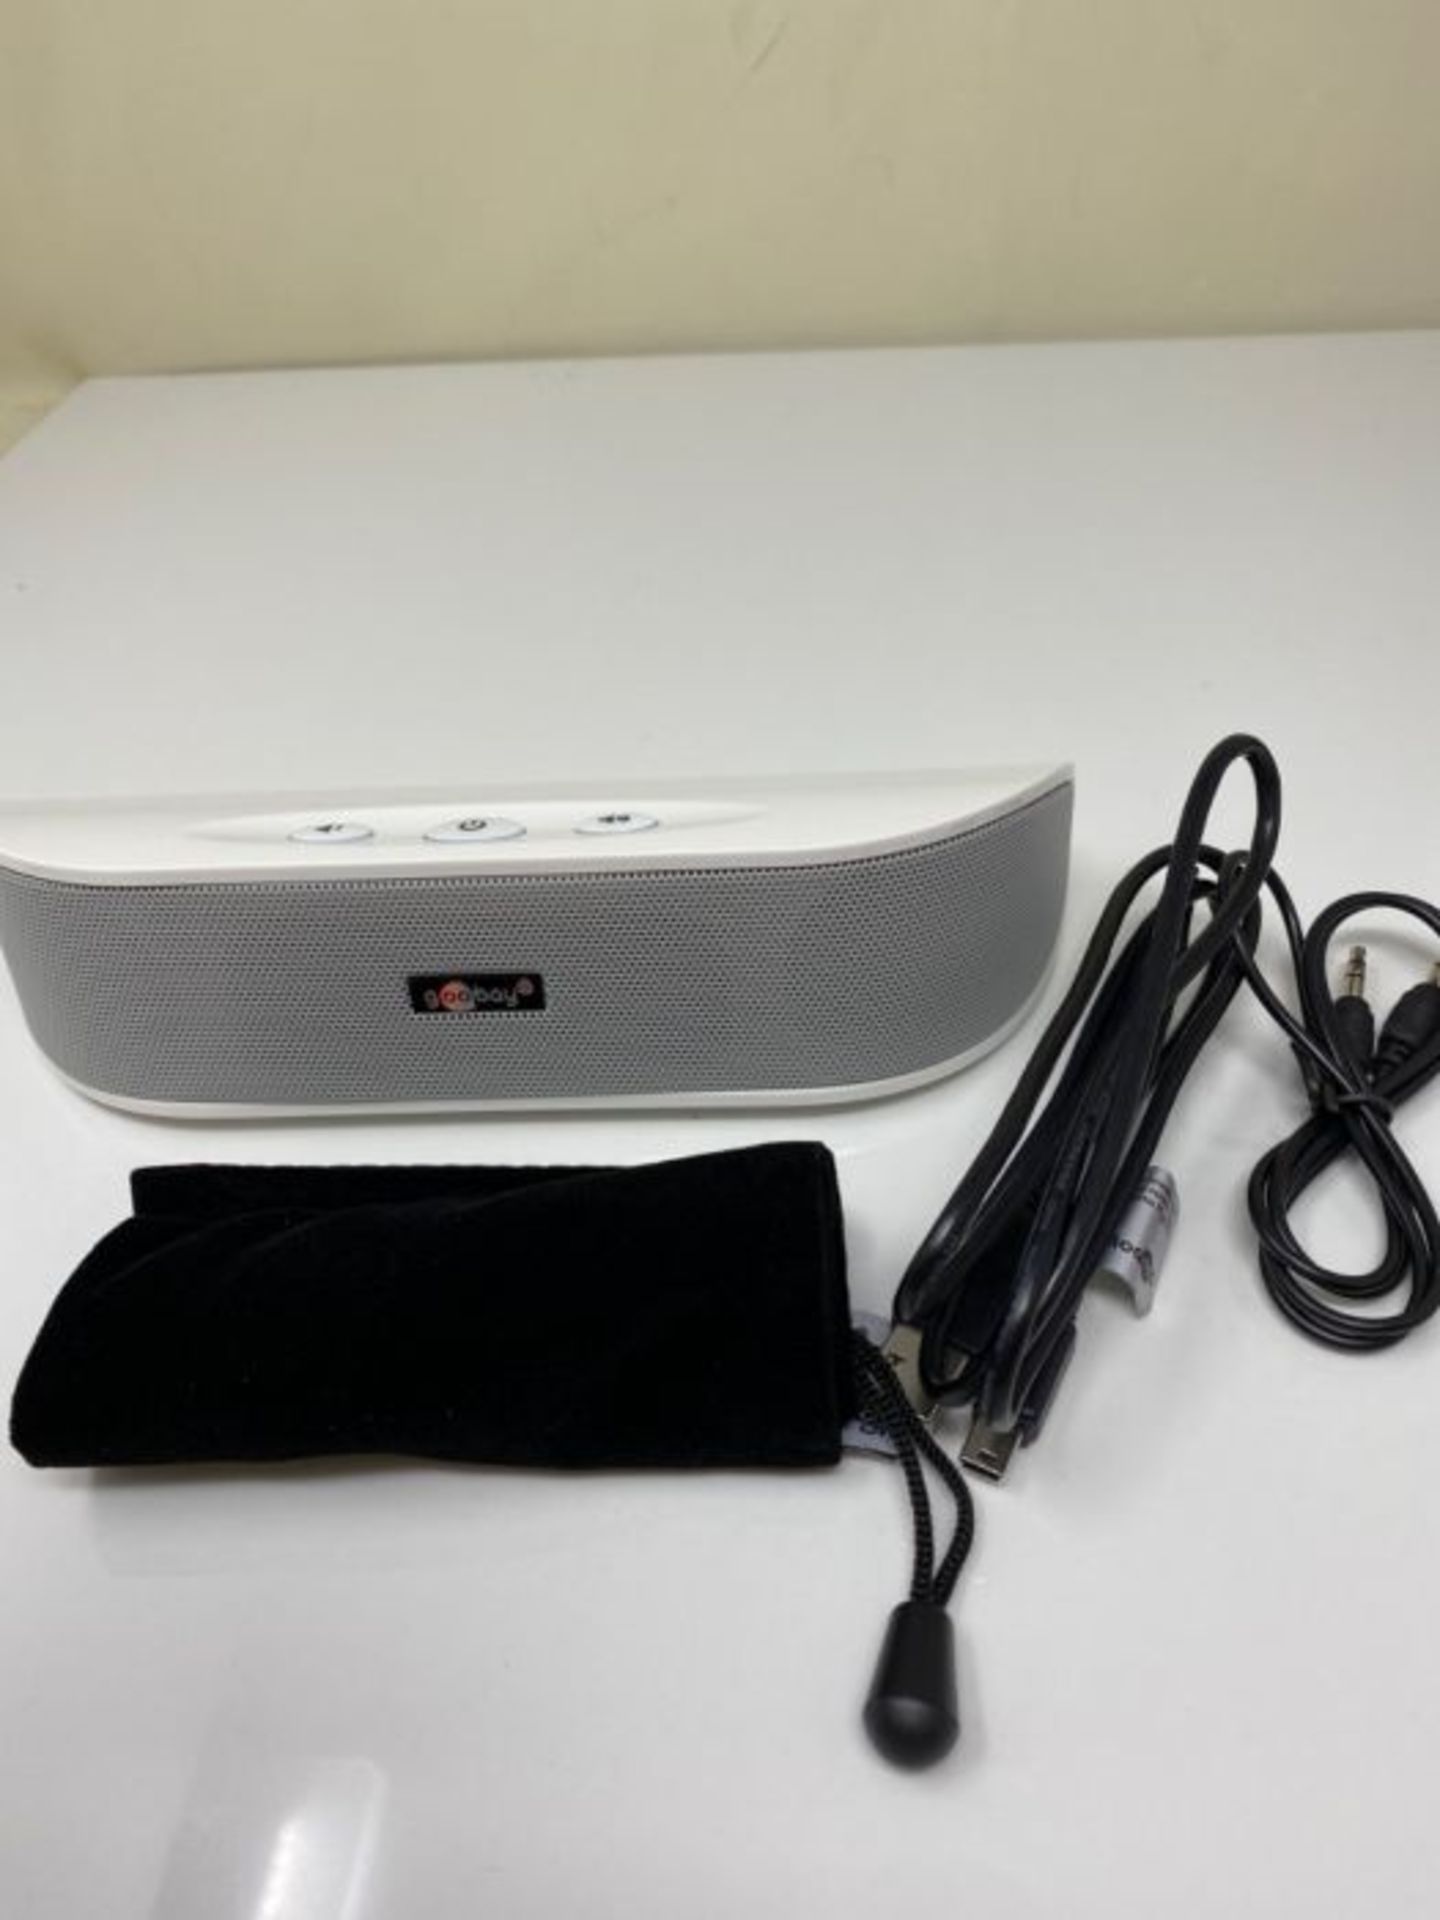 Goobay SoundBar 6W Stereo Lautsprecher für PC, TV und Notebook, weiß - Image 3 of 3